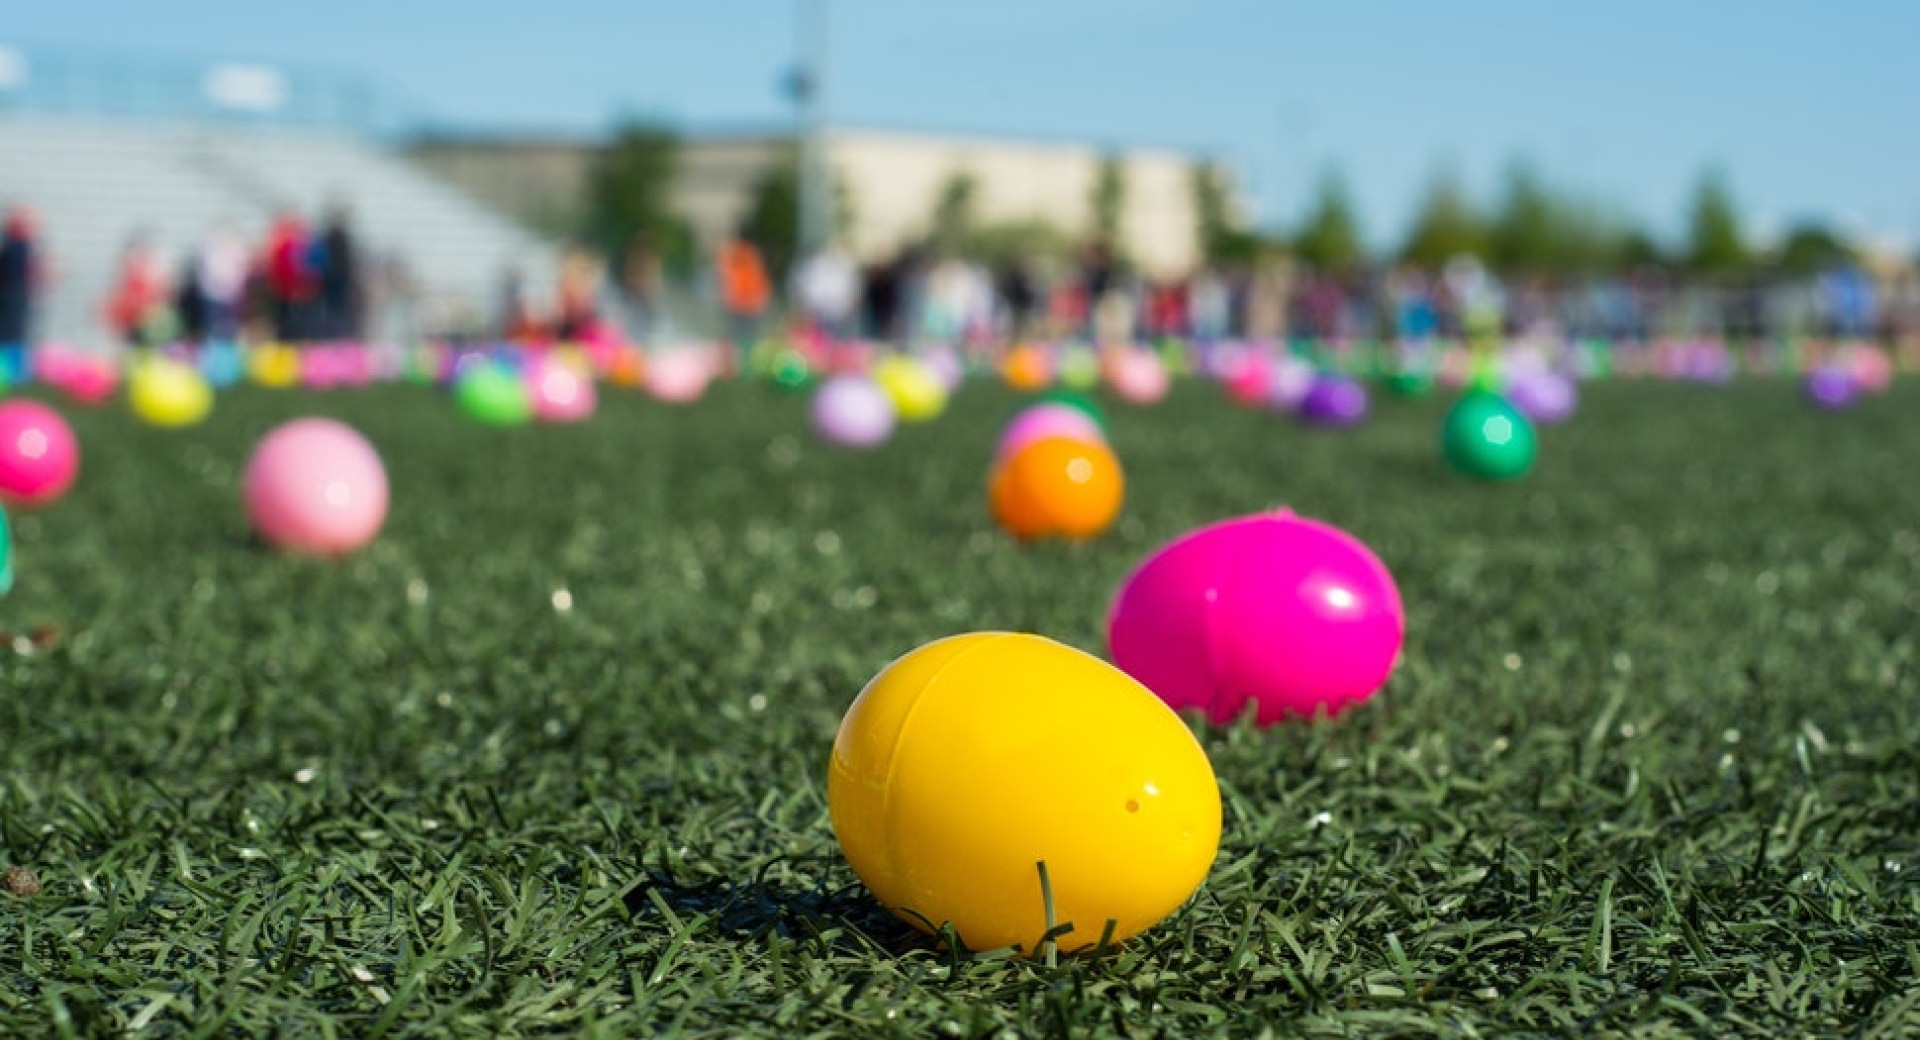 Community Easter Egg Hunt 2020 - CANCELLED